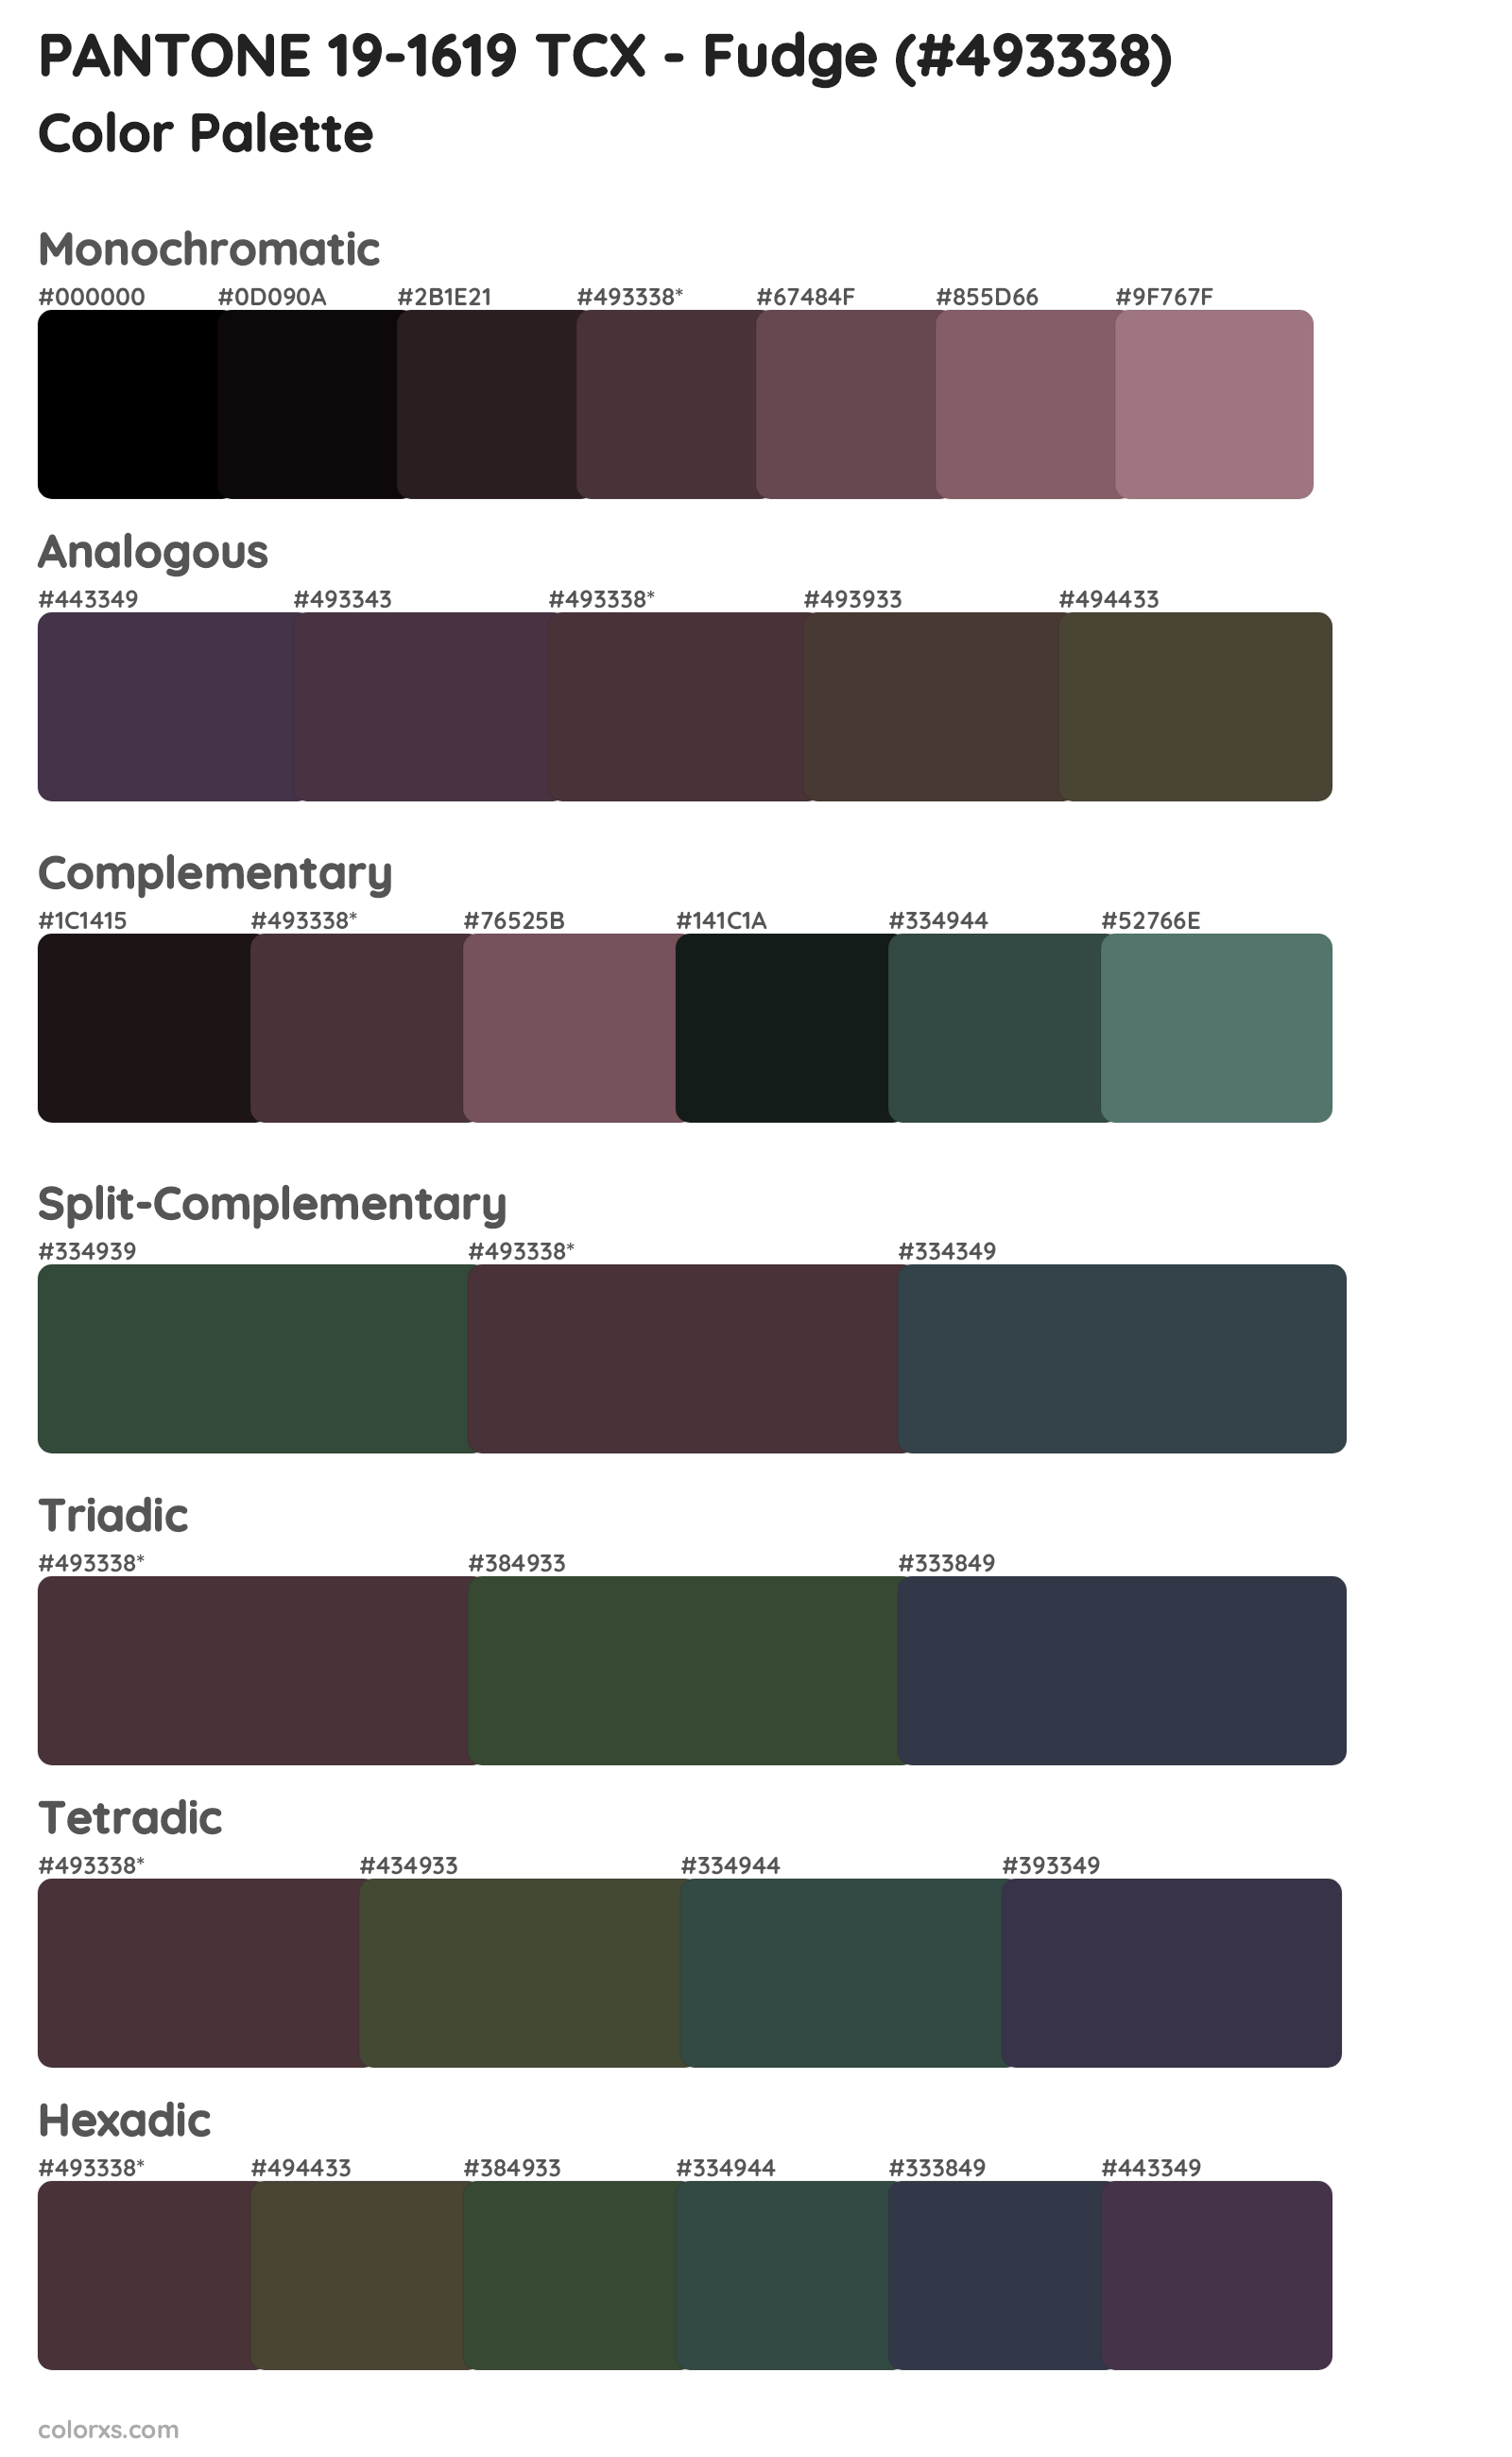 PANTONE 19-1619 TCX - Fudge Color Scheme Palettes